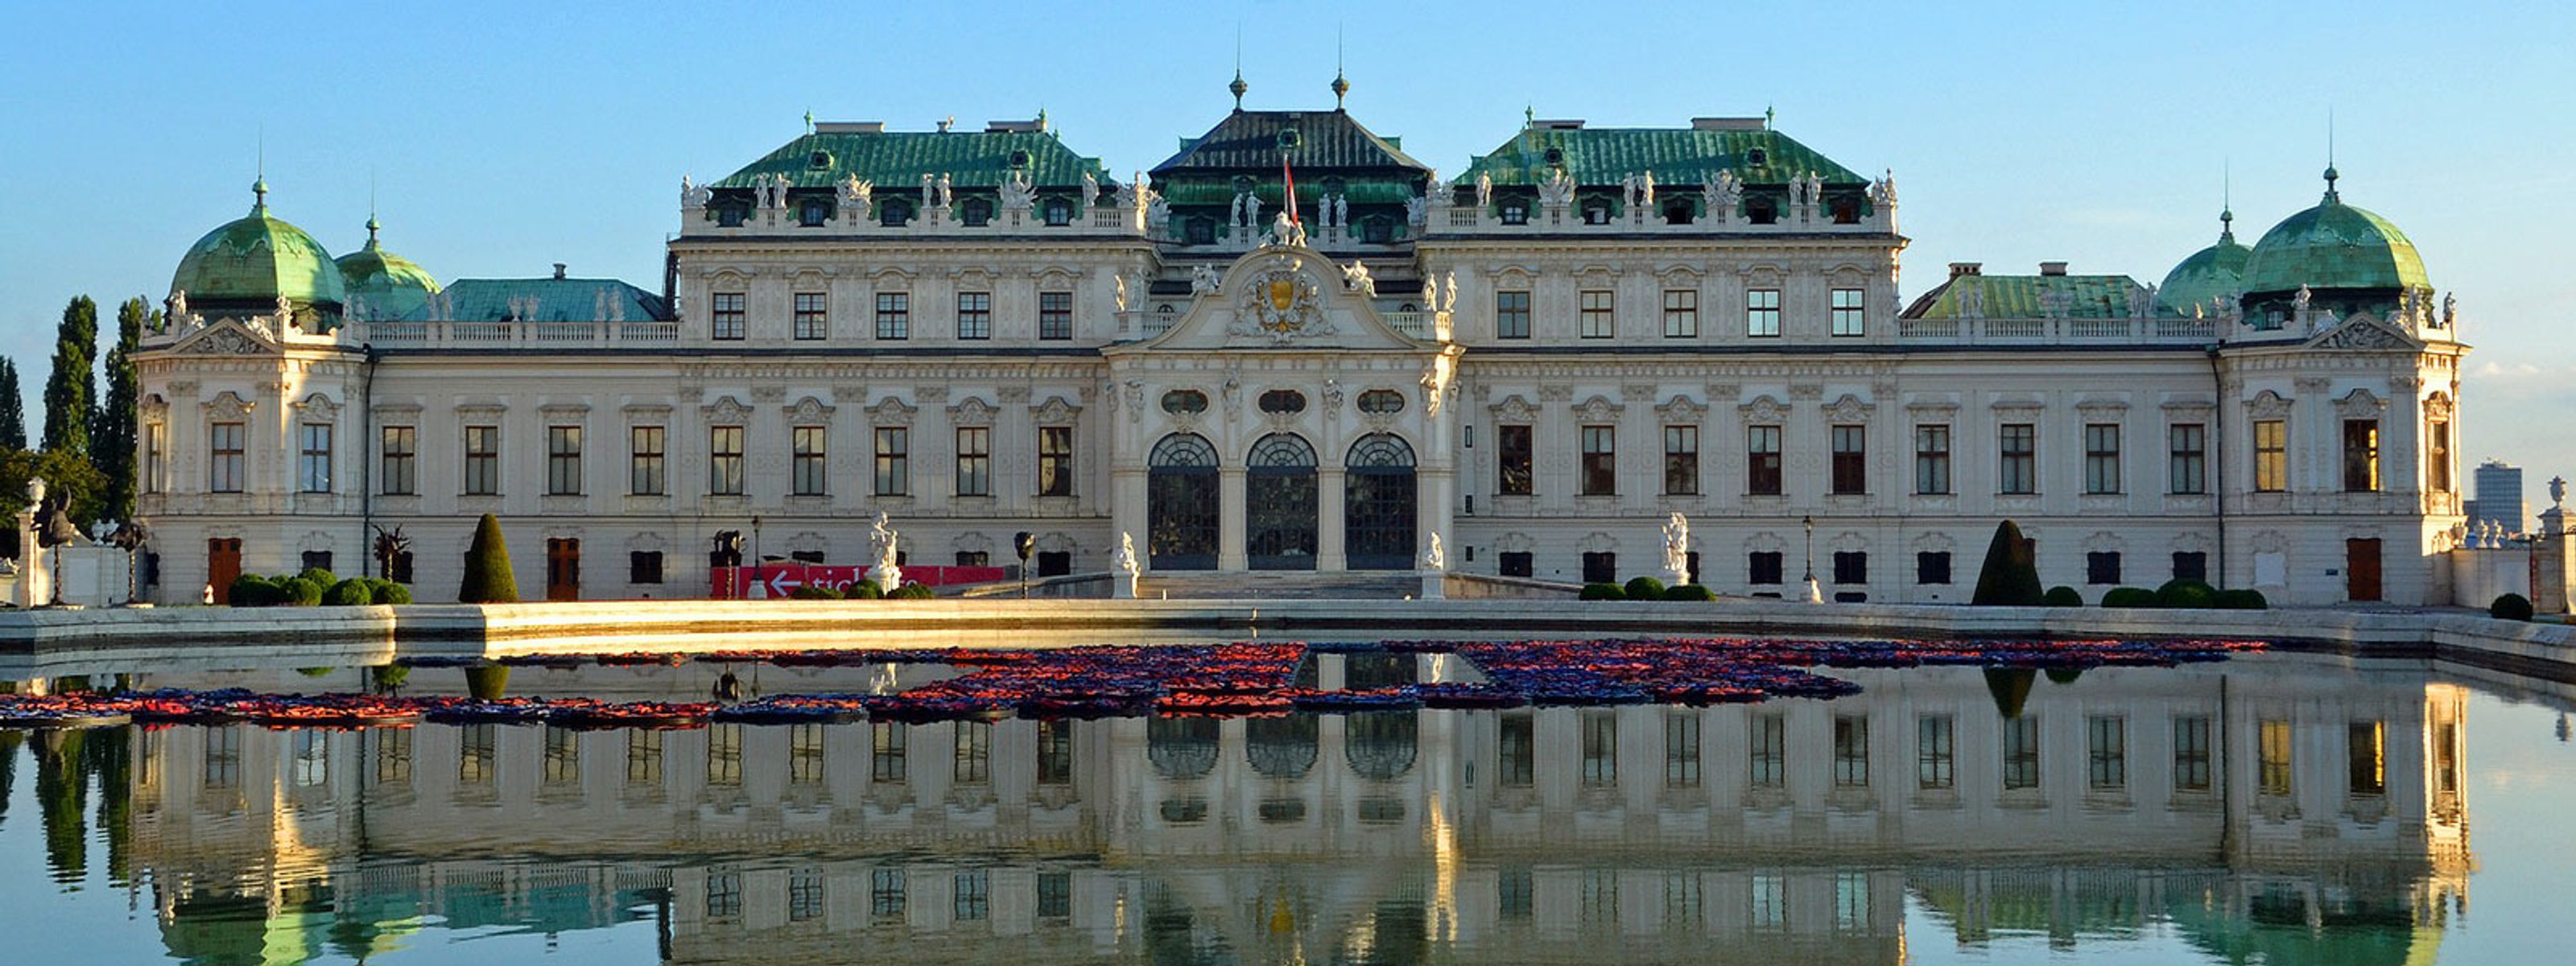 Belvedere Schloss Wien Reise